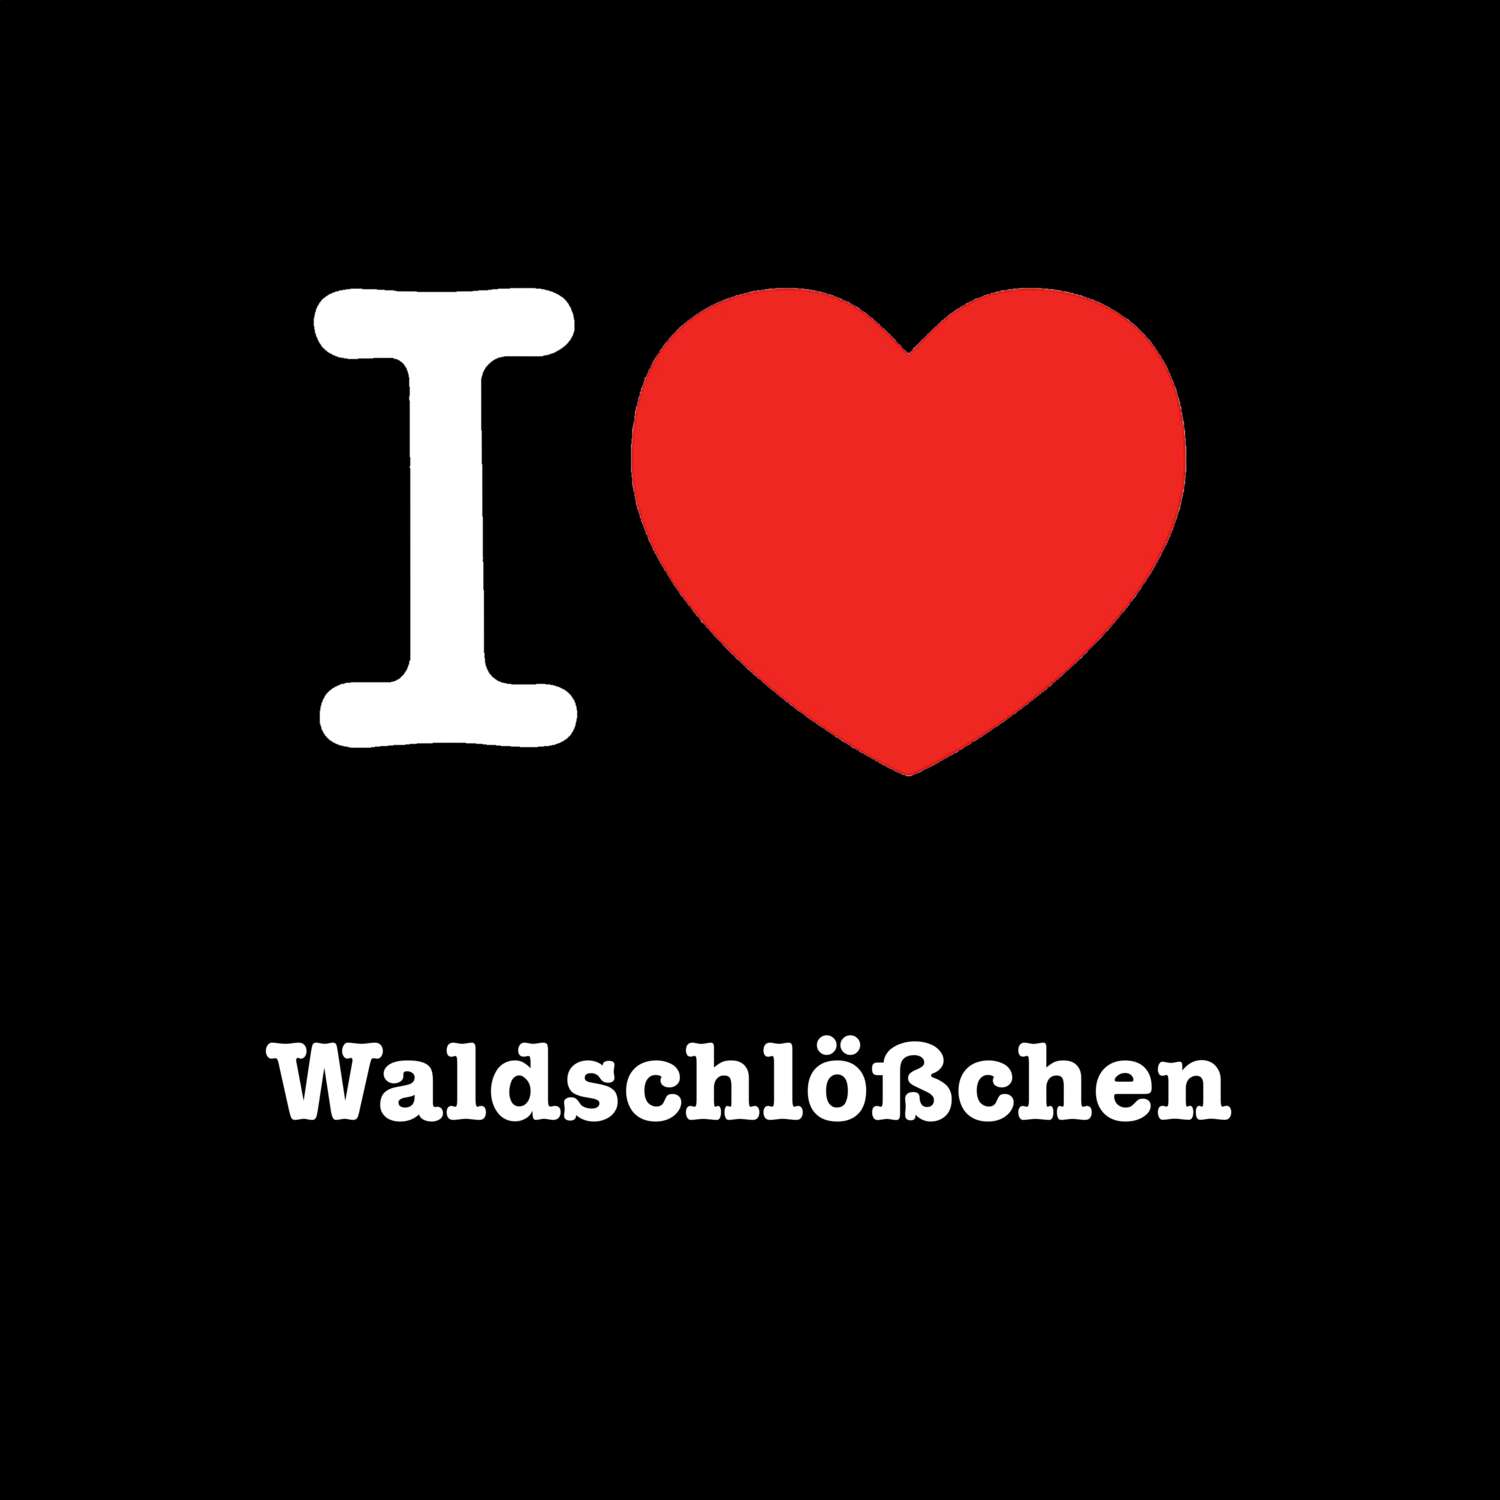 Waldschlößchen T-Shirt »I love«